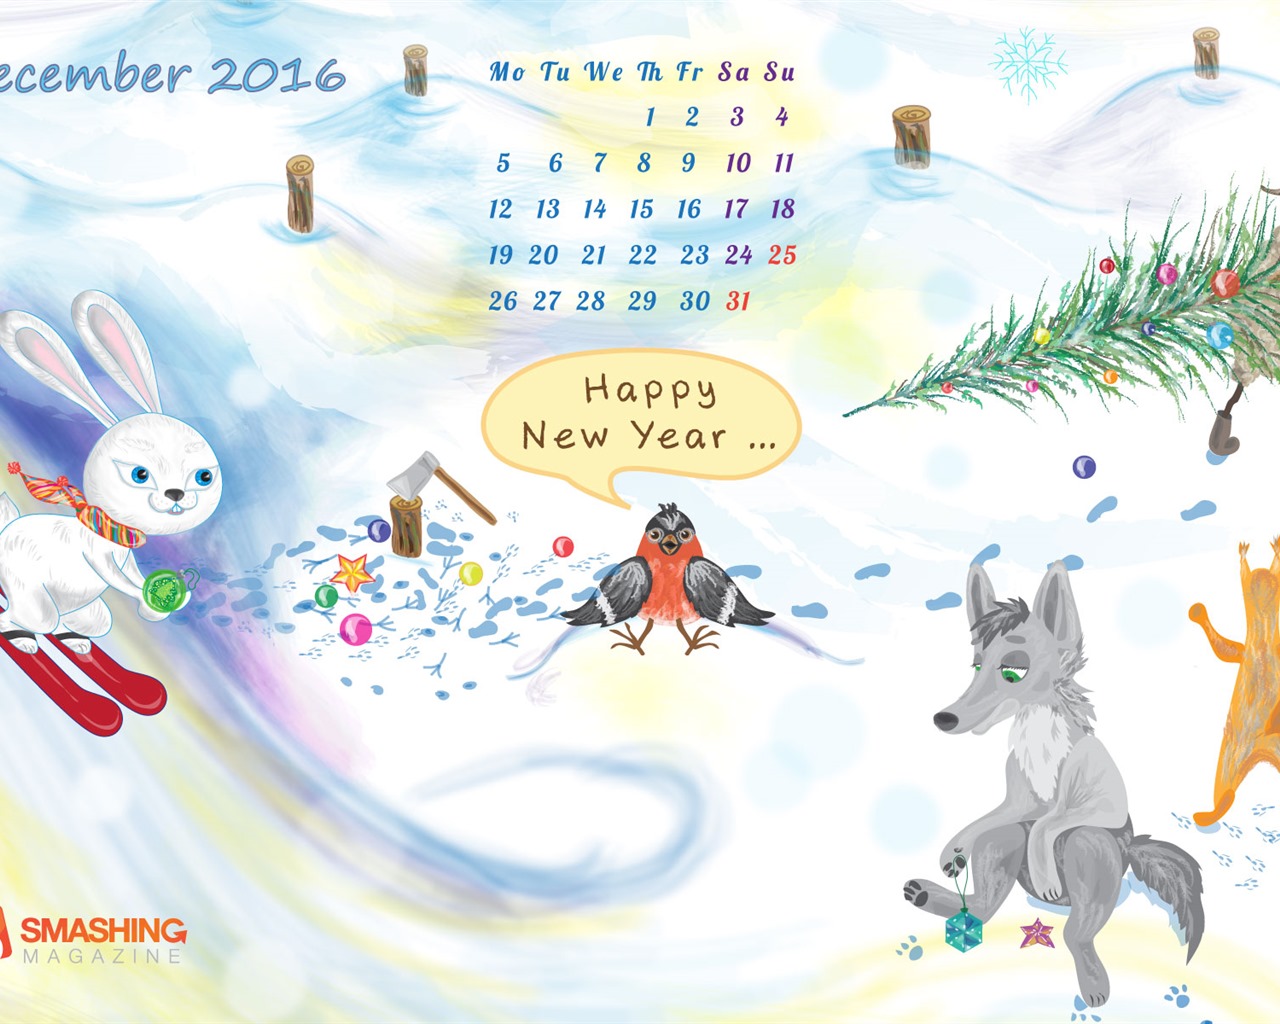 December 2016 Christmas theme calendar wallpaper (1) #27 - 1280x1024